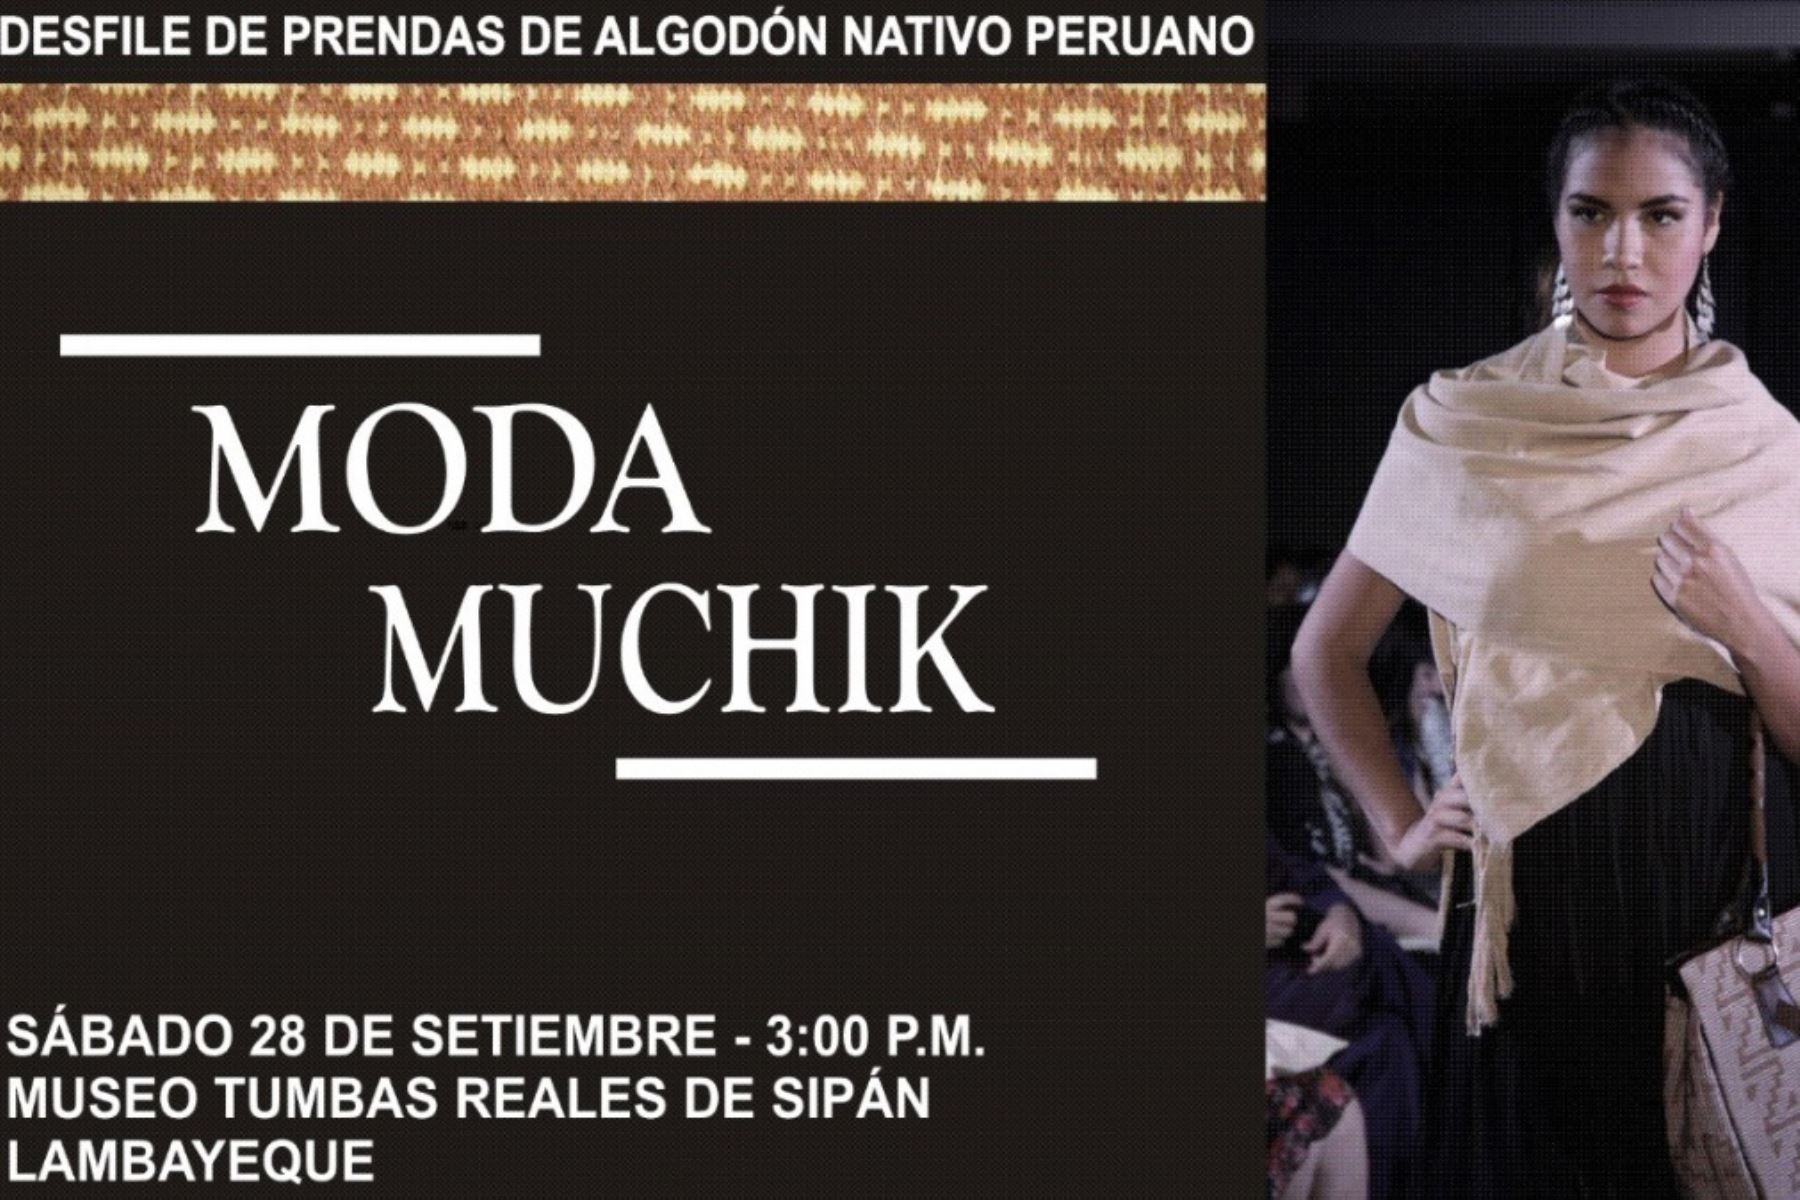 Presentan innovadoras prendas y accesorios de algodón nativo en Moda Muchik 2019